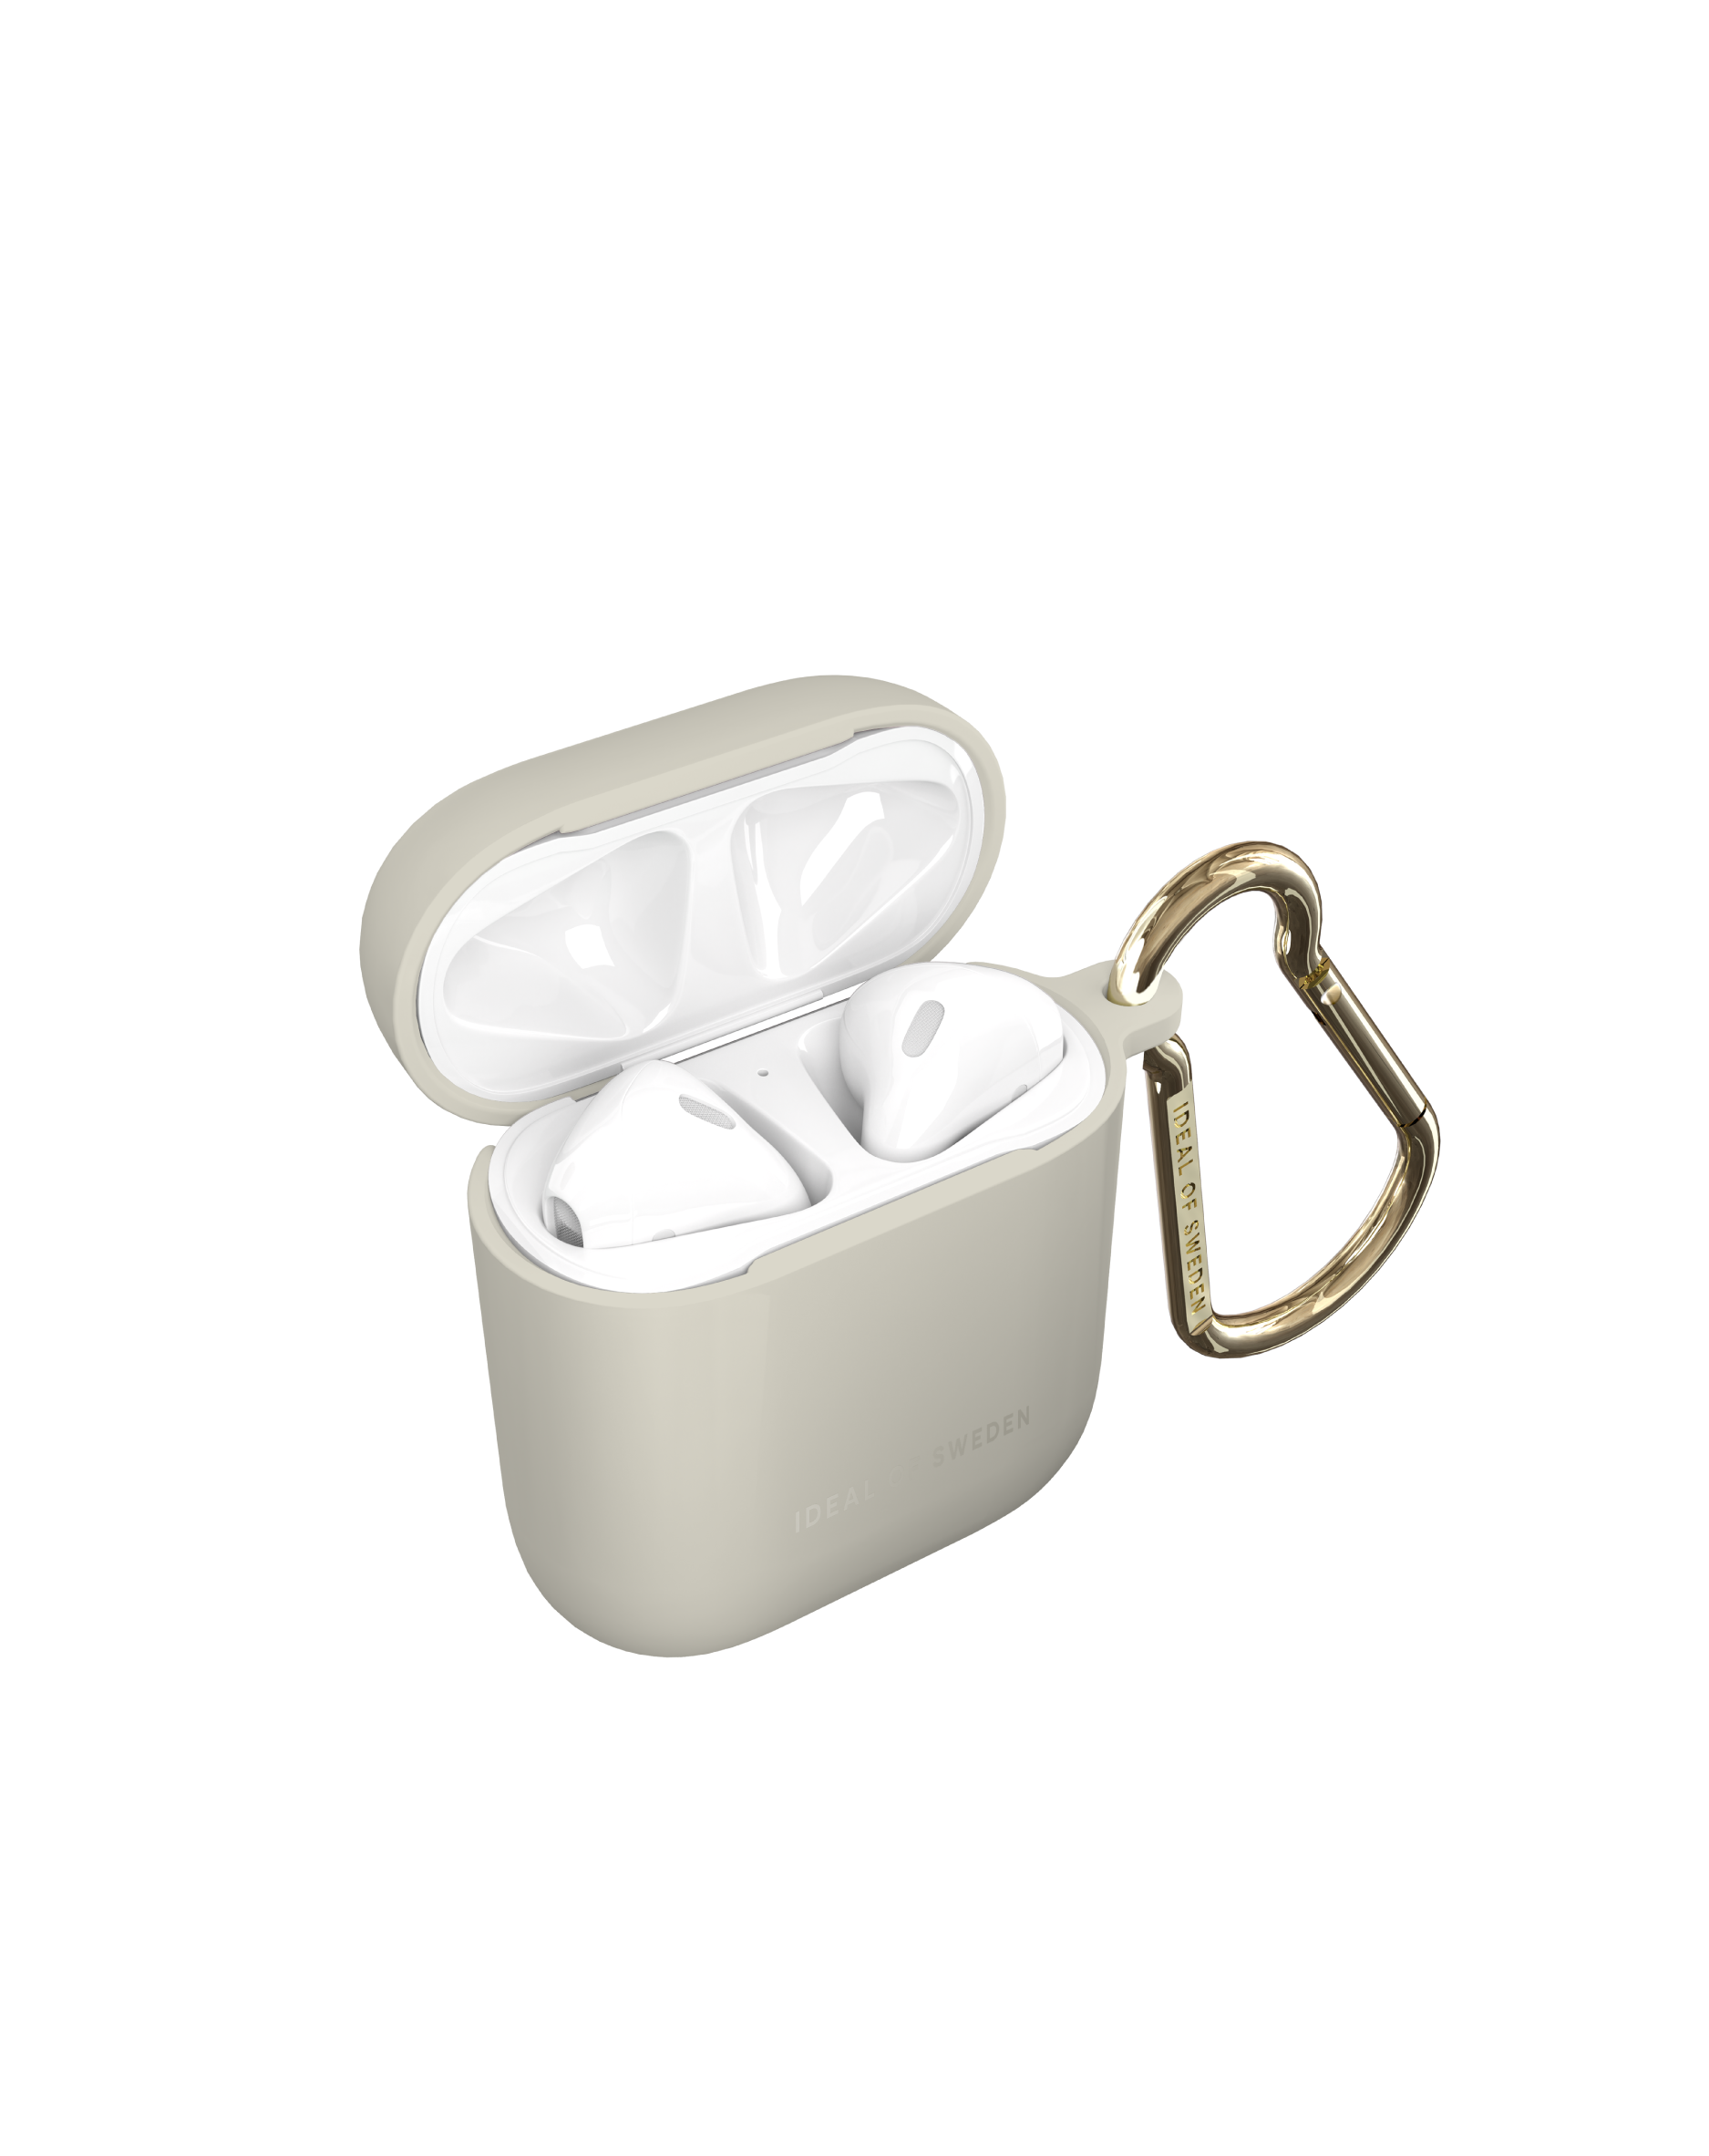 für: OF IDAPCAS22-393 Ecru Case AirPod IDEAL SWEDEN Full Cover passend Apple